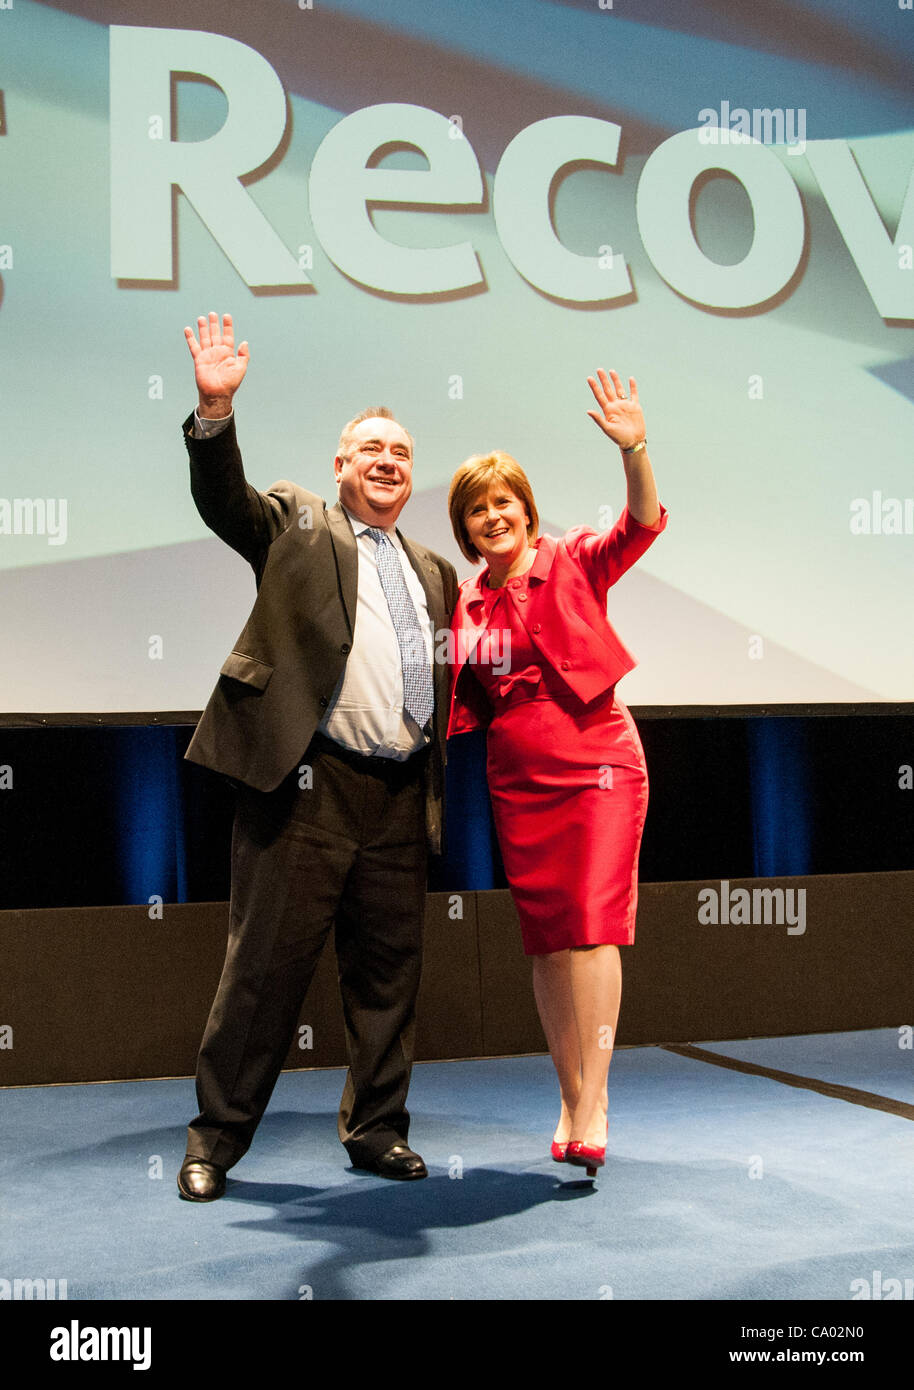 Alex Salmond e Nicola Storione prendere la fase dopo il vice leader dell' indirizzo di chiusura a molla SNP conferenza presso il SSEC in Glasgow. Immagine: Wullie Marr/ Alamy Foto Stock